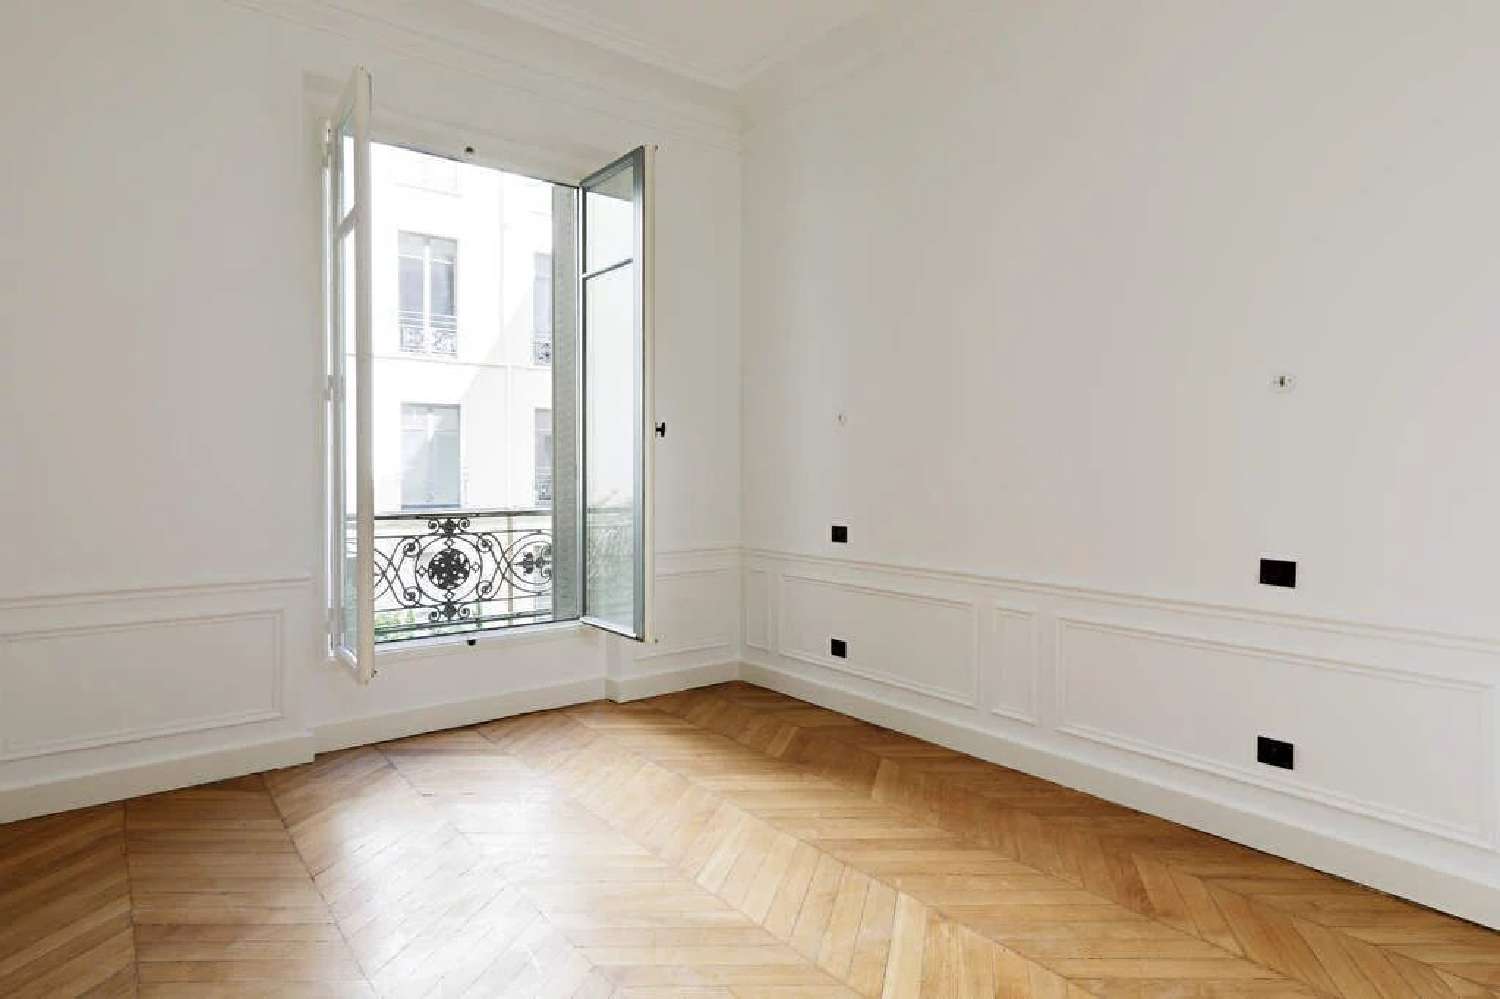  à vendre appartement Clichy Hauts-de-Seine 7